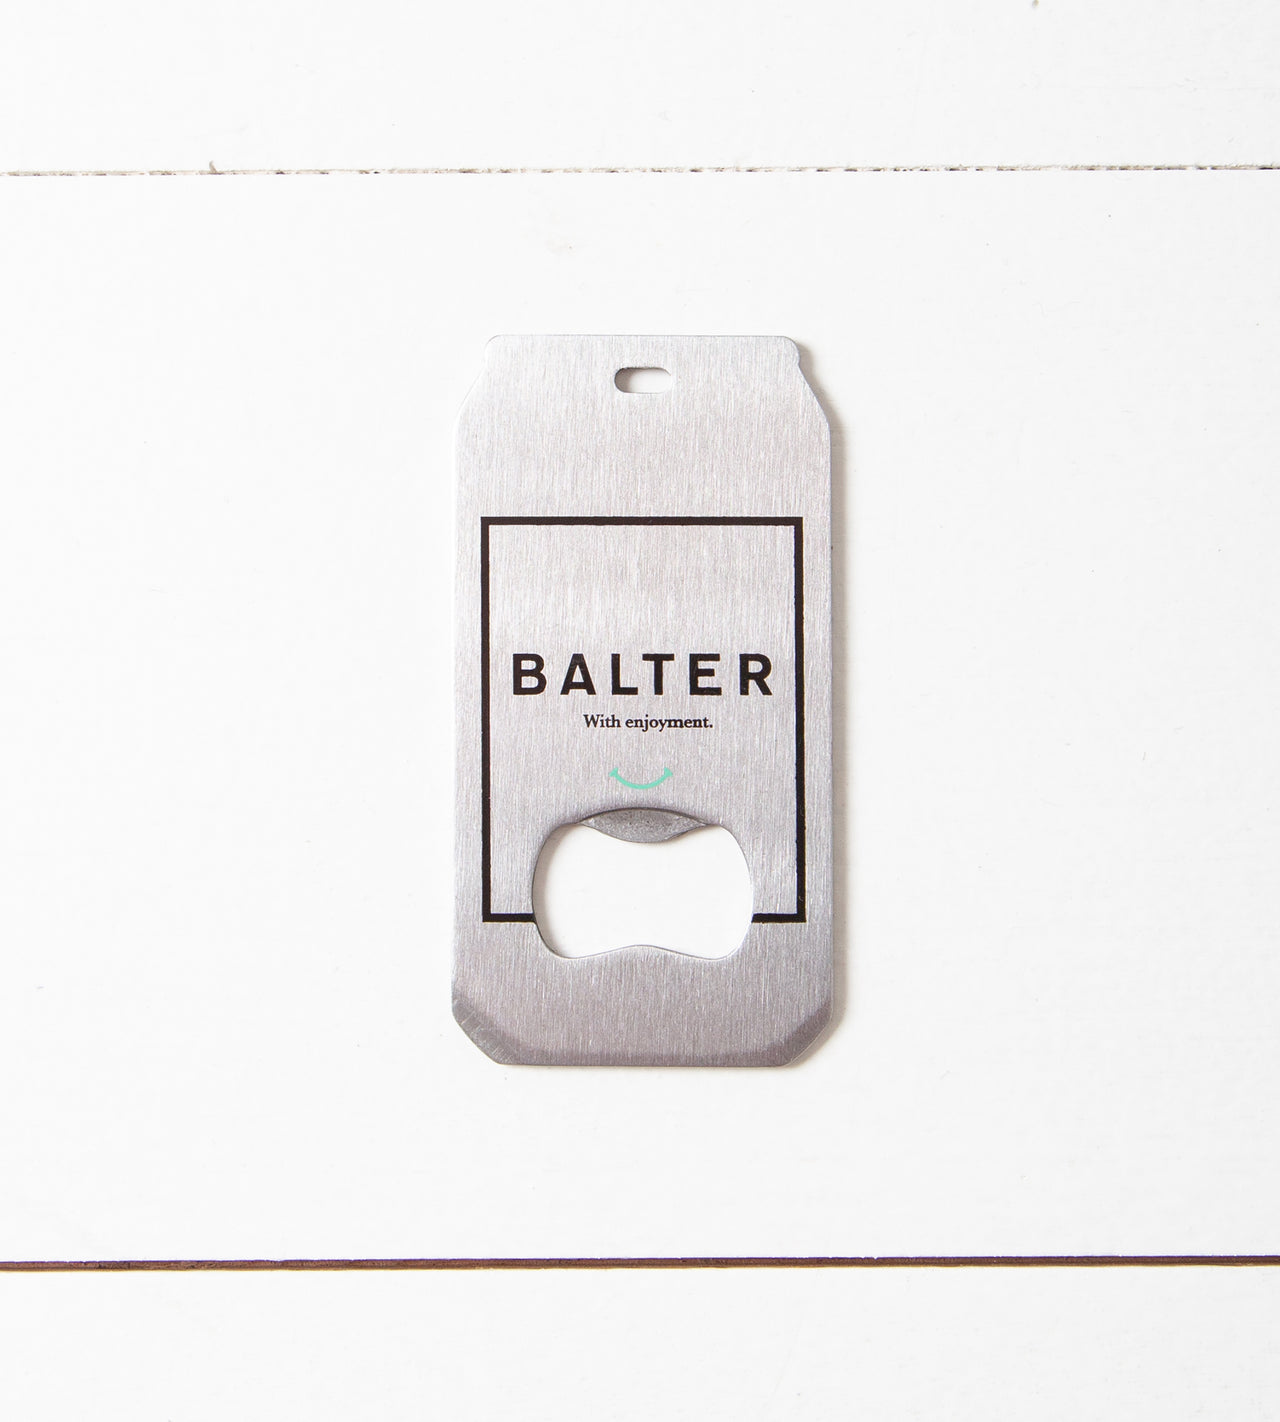 The Beer Opener - Balter Brewing Company - Craft Beer Merch Australia